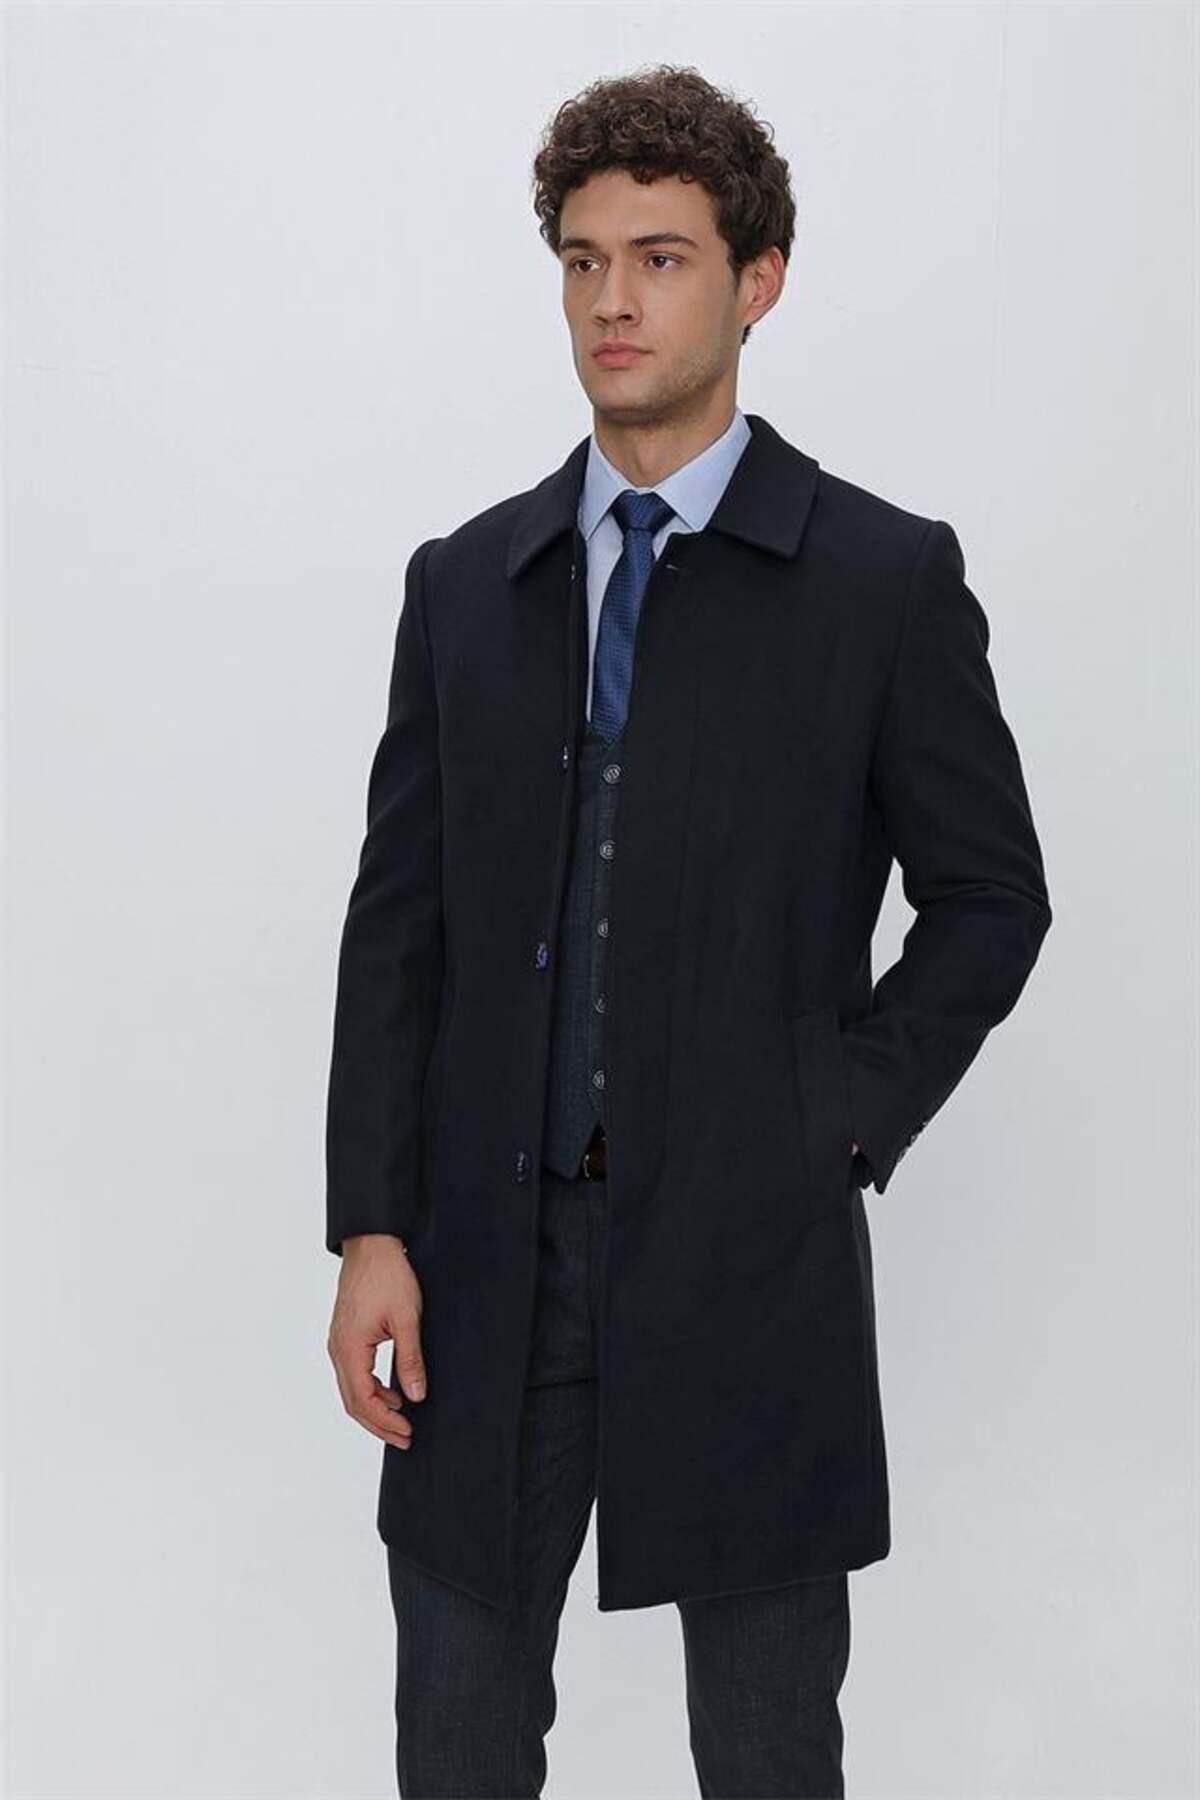 İmza Koyu Lacivert Kaşe Berberi Yaka Yırtmaçlı Astarlı Comfort Fit Rahat Kesim Klasik Palto 1005225156